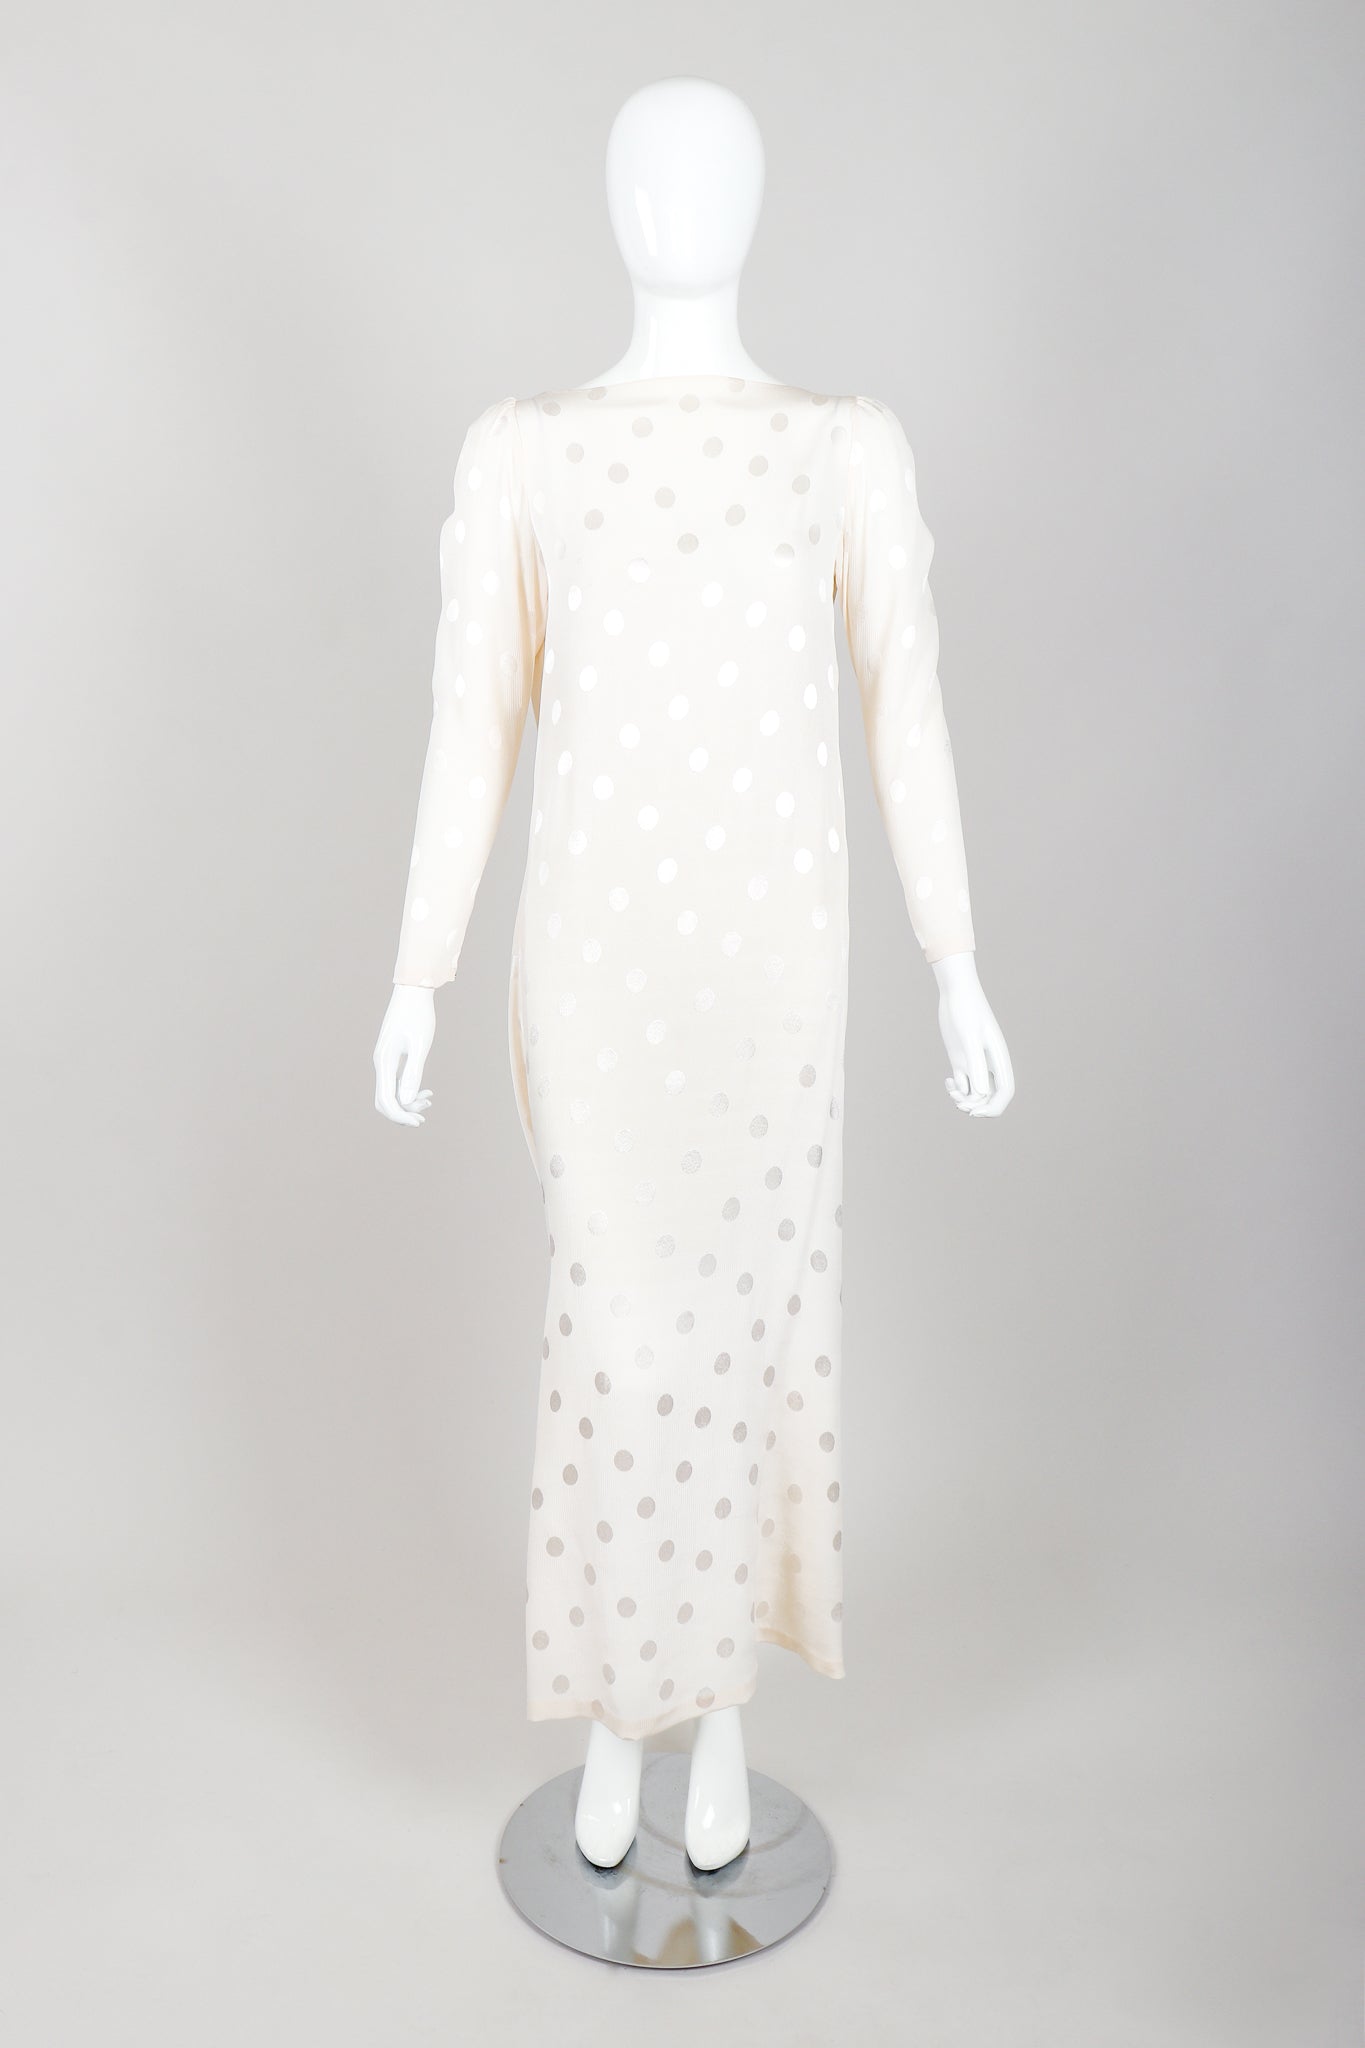 Vintage Oscar de la Renta Cowl Back Rosette Dress Bridal Wedding on Mannequin Front at Recess